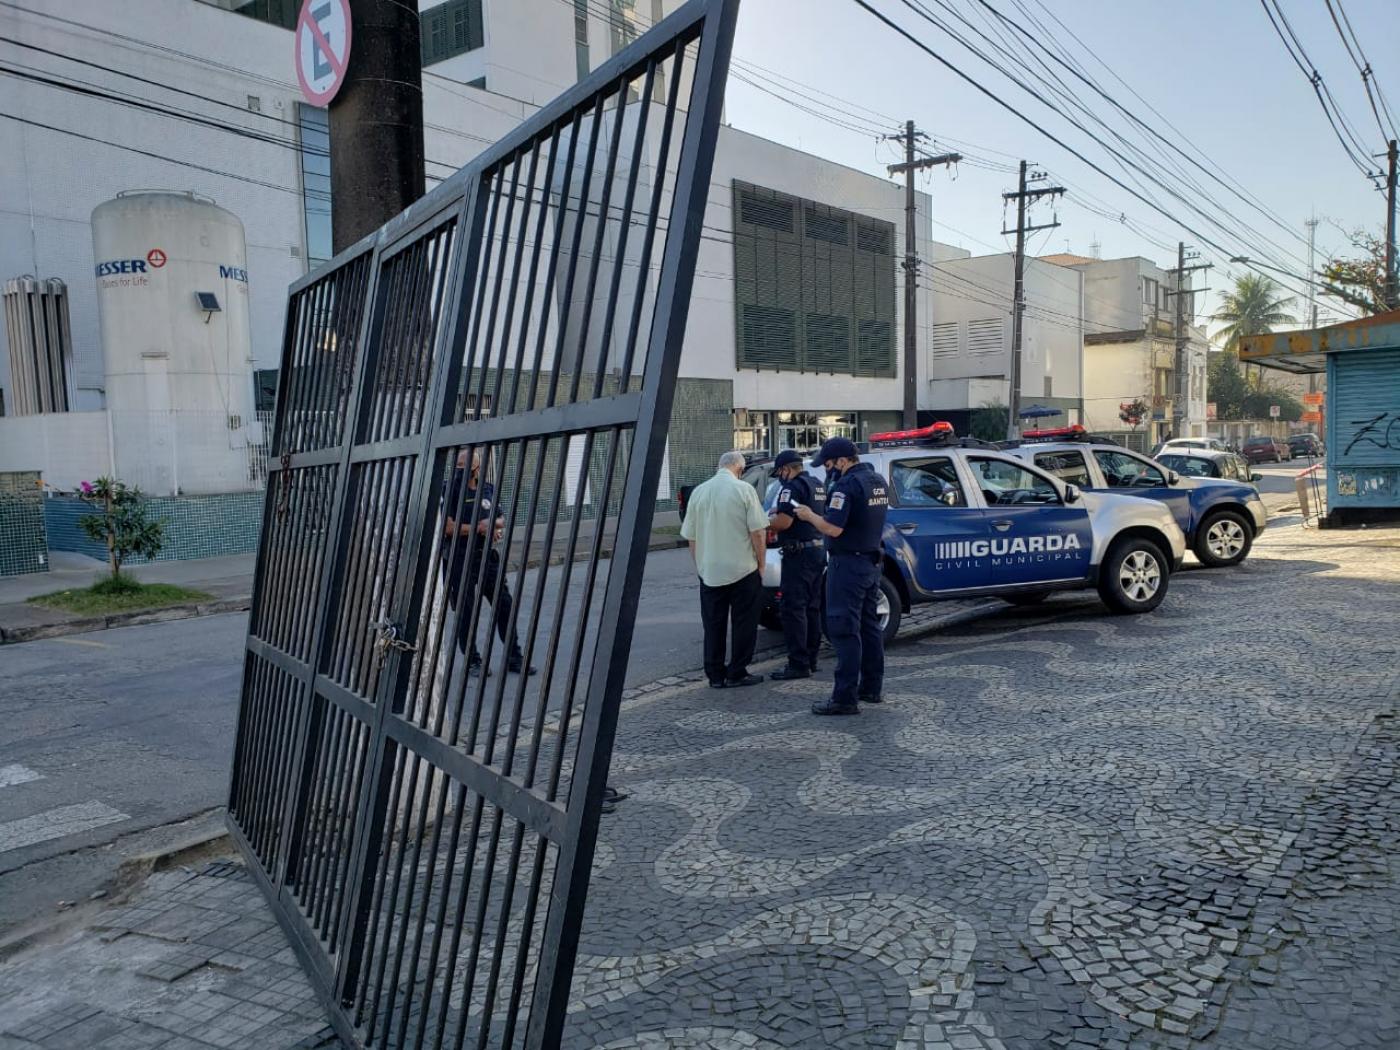 Portão de alumínio encostado em um posto e ao lado guardas e viatura da guarda. #paratodosverem